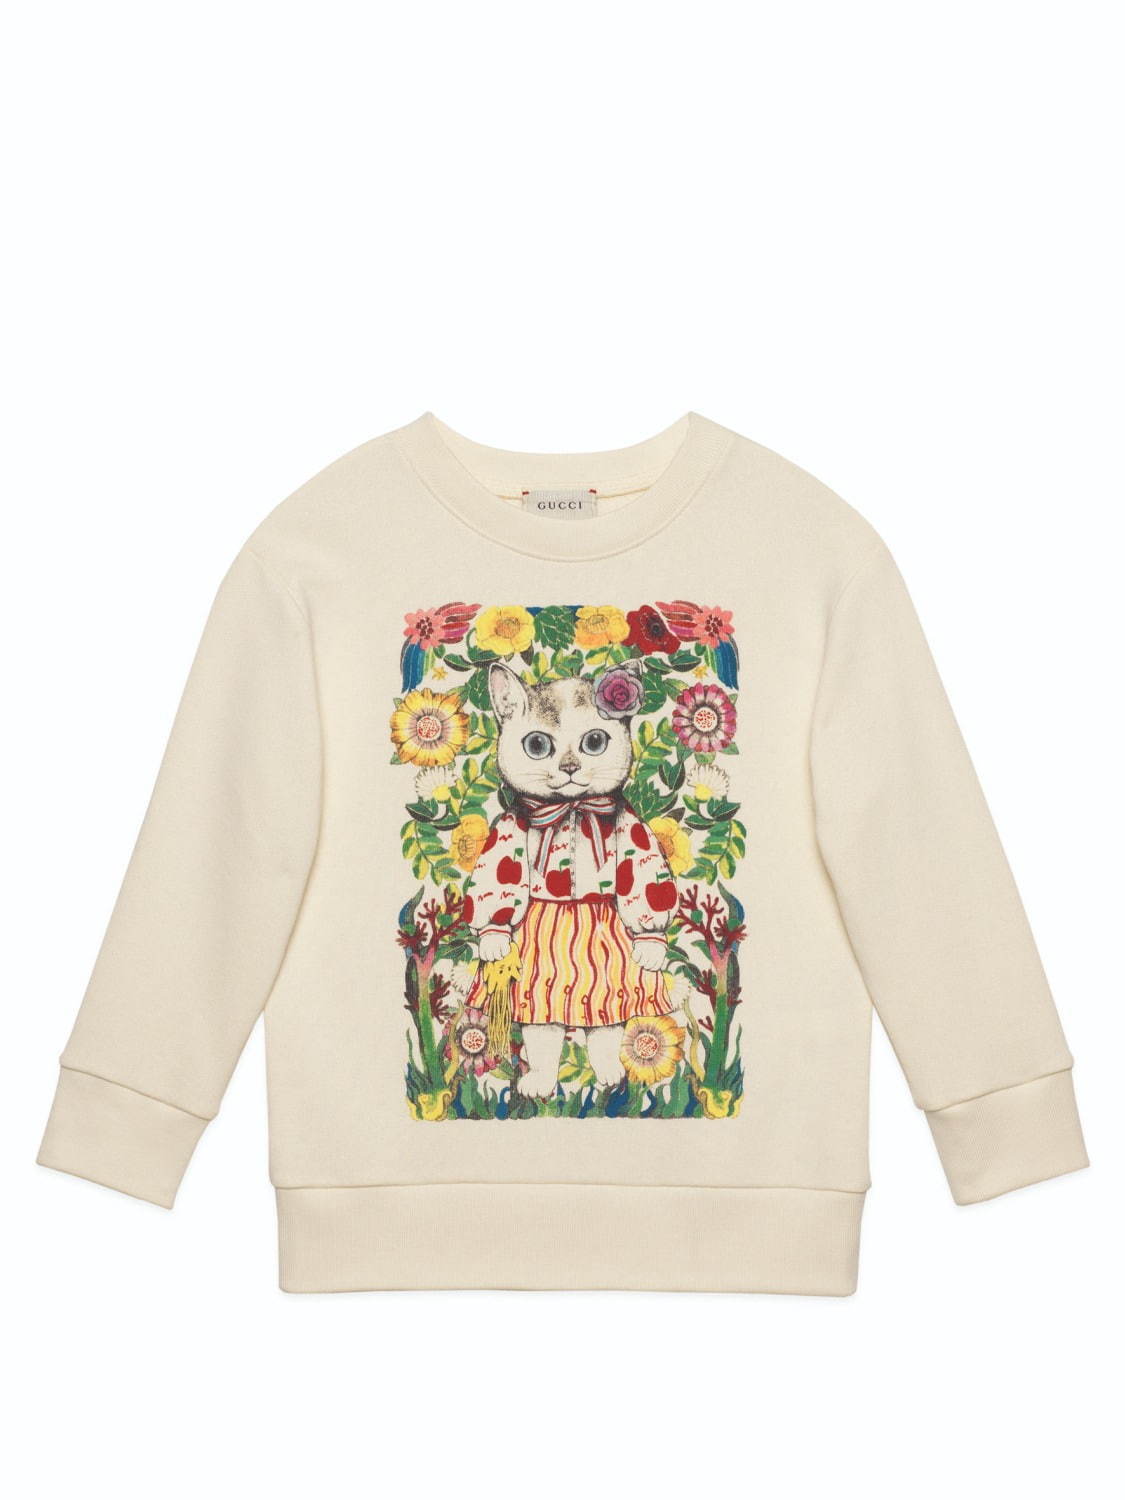 グッチ ヒグチユウコ シュールな猫やウサギが彩るキッズ ベビーウェア 日本限定アイテムも ファッションプレス